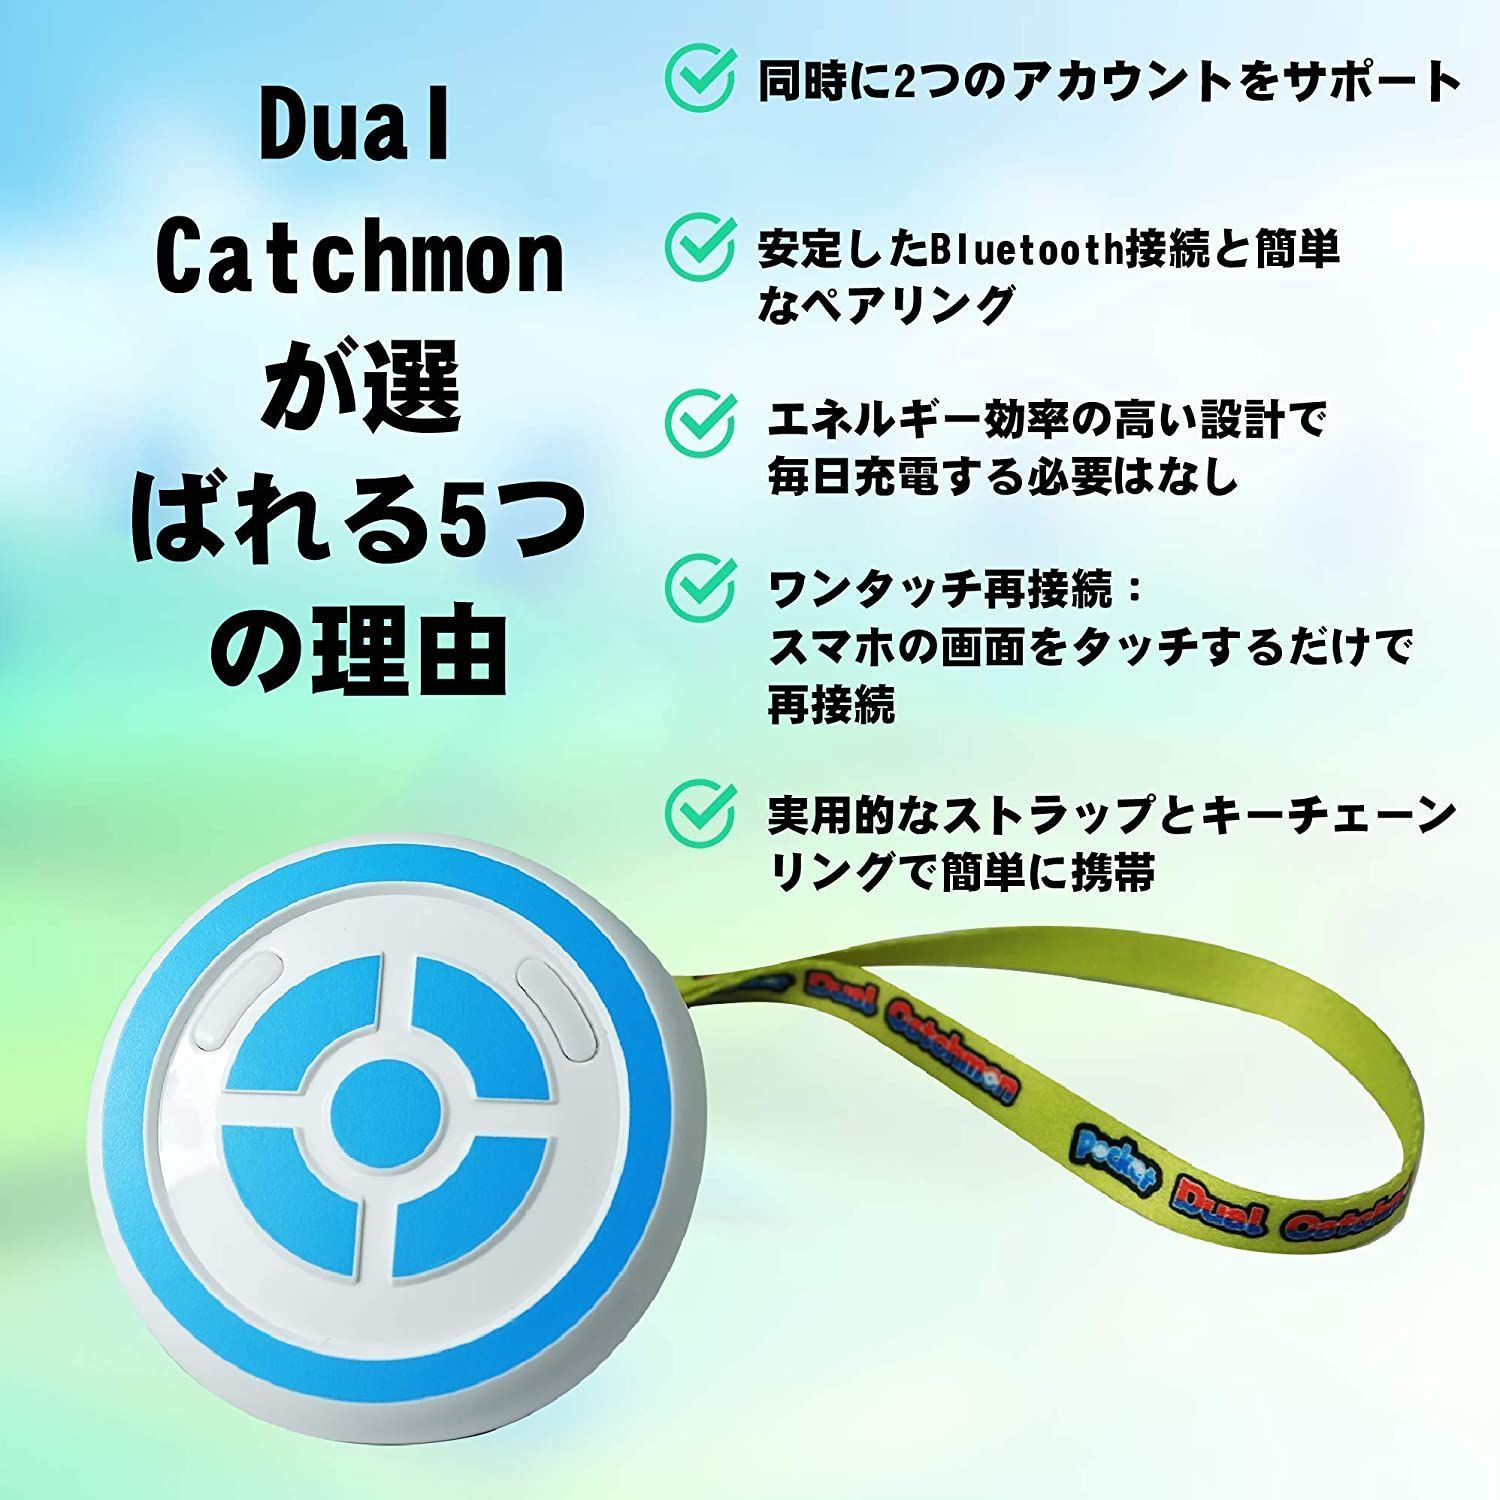 Megacom ポケモンGO 自動捕獲 デュアルキャッチモン 二つのID使用可能 